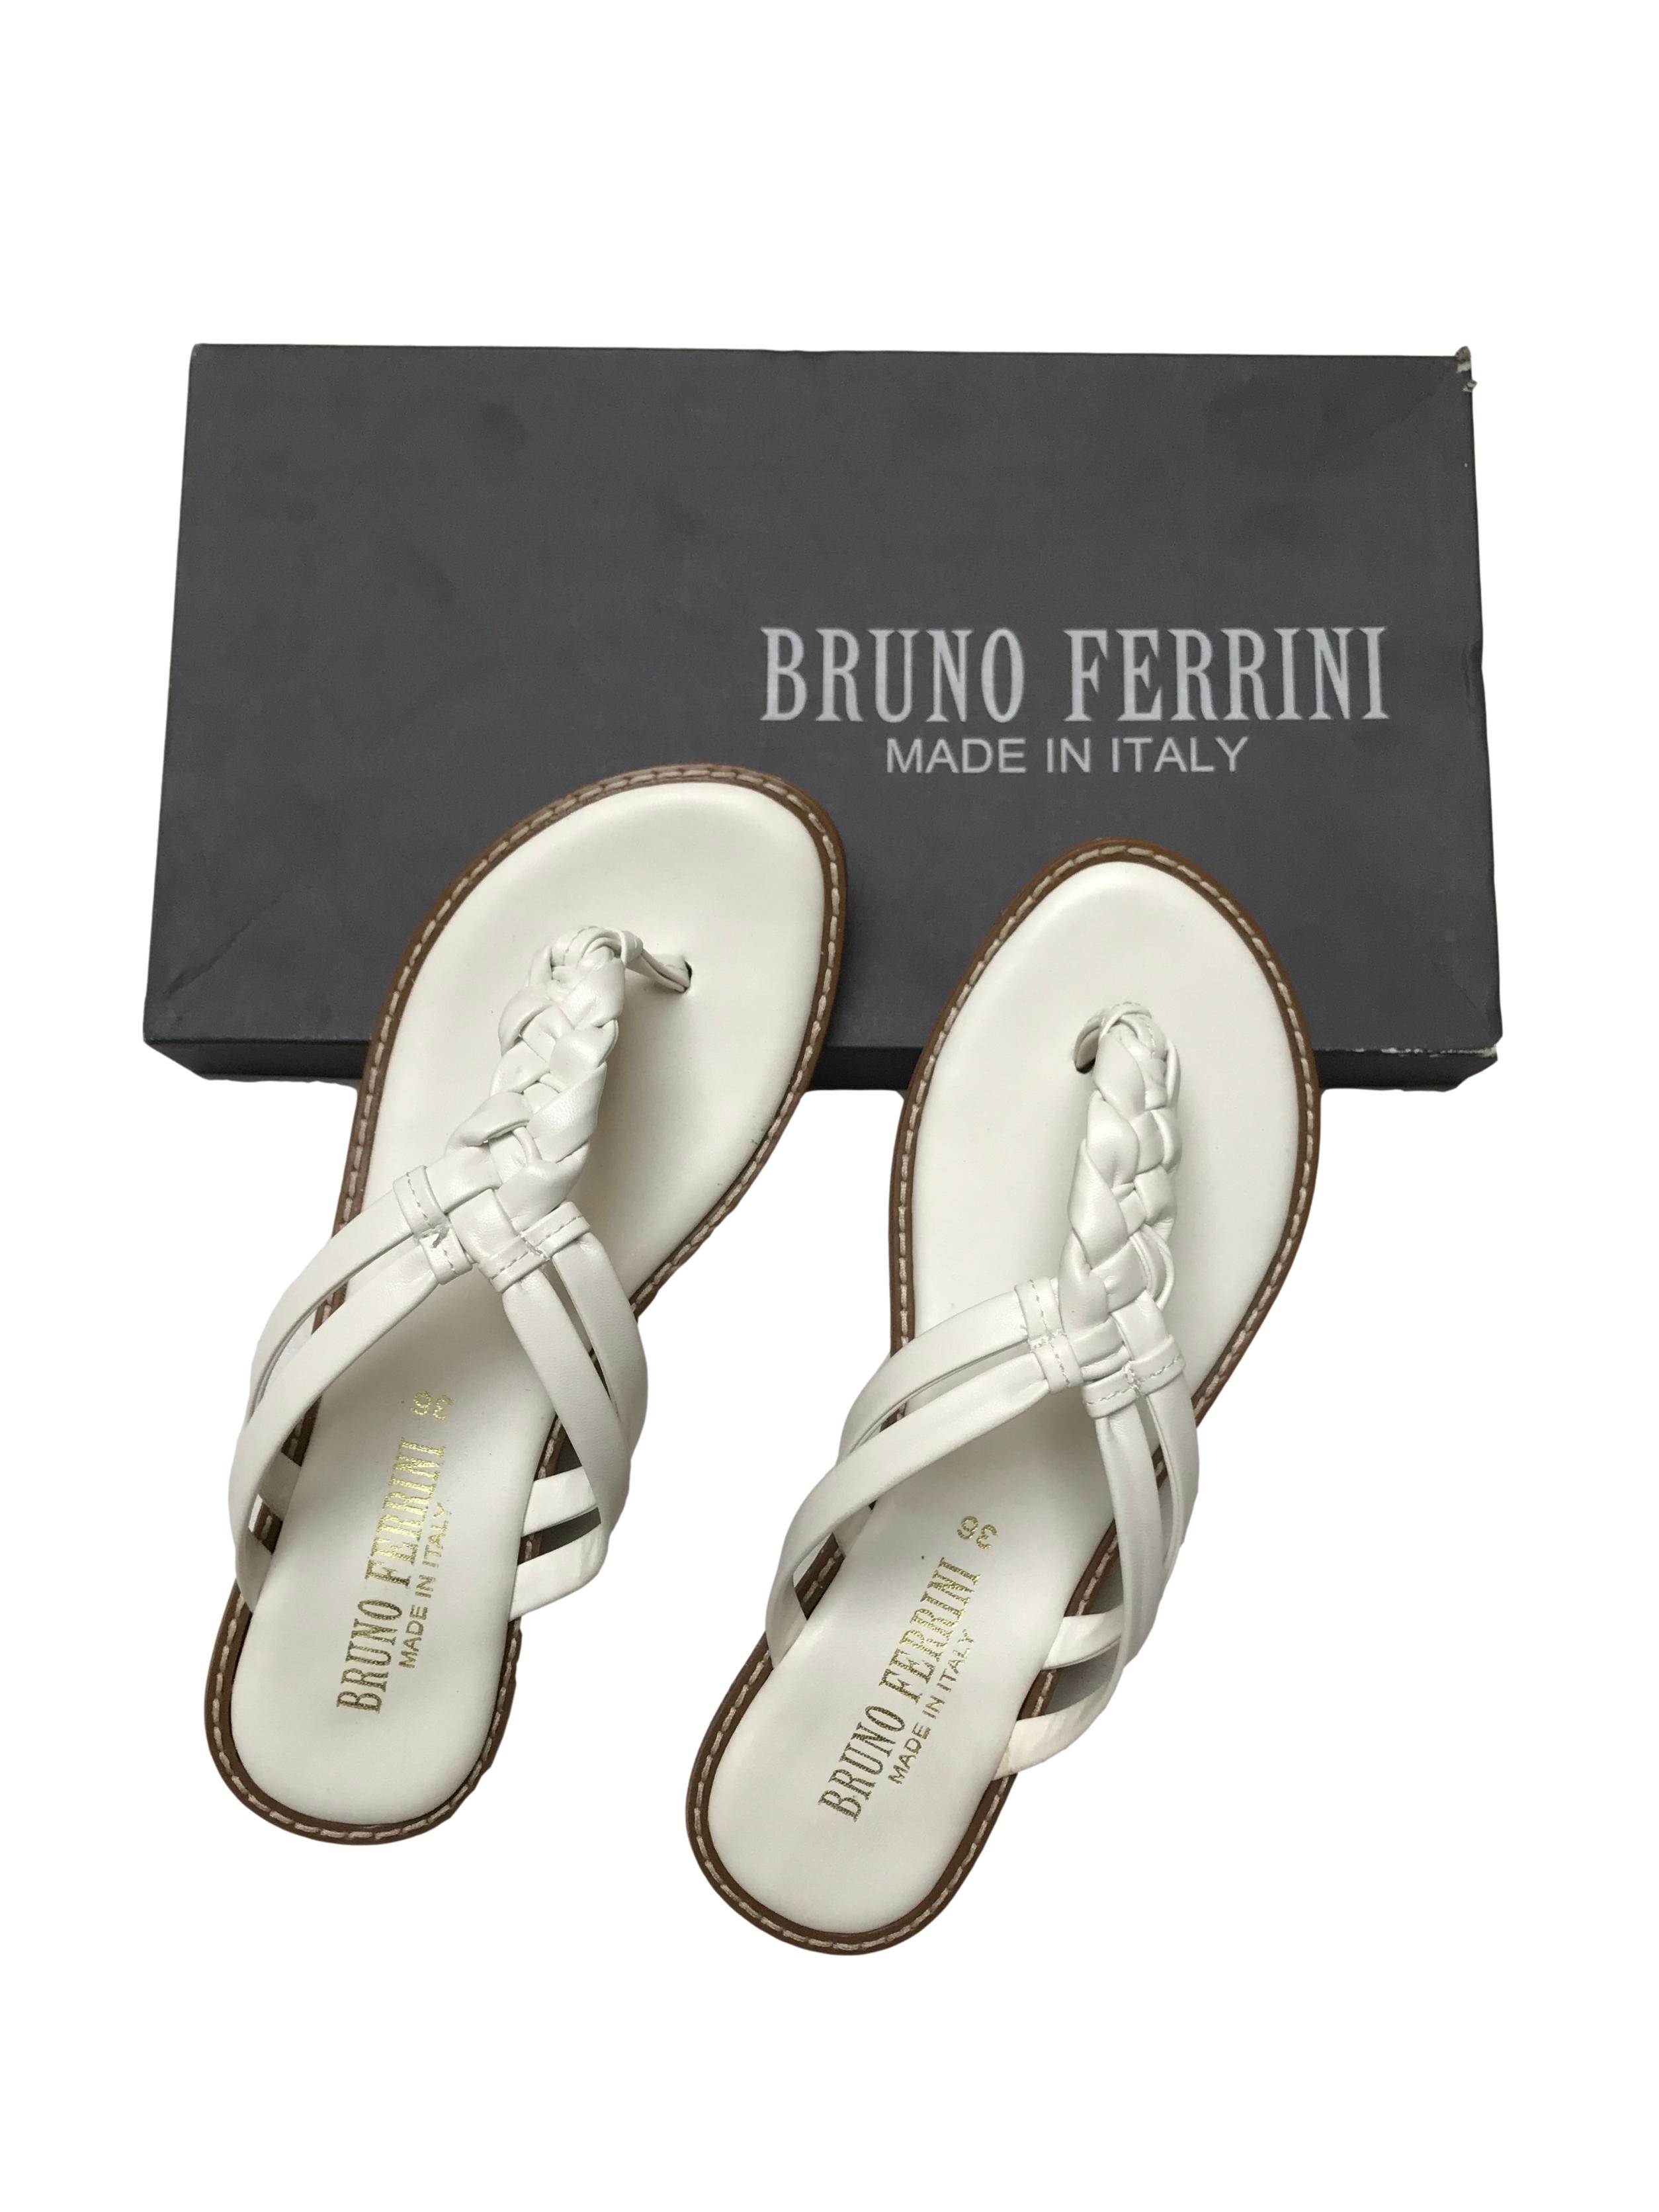 Sandalias Bruno Ferrini blancas de dos tiras trenzadas, taco 2.5cm. Nuevas en caja, precio original S/ 169